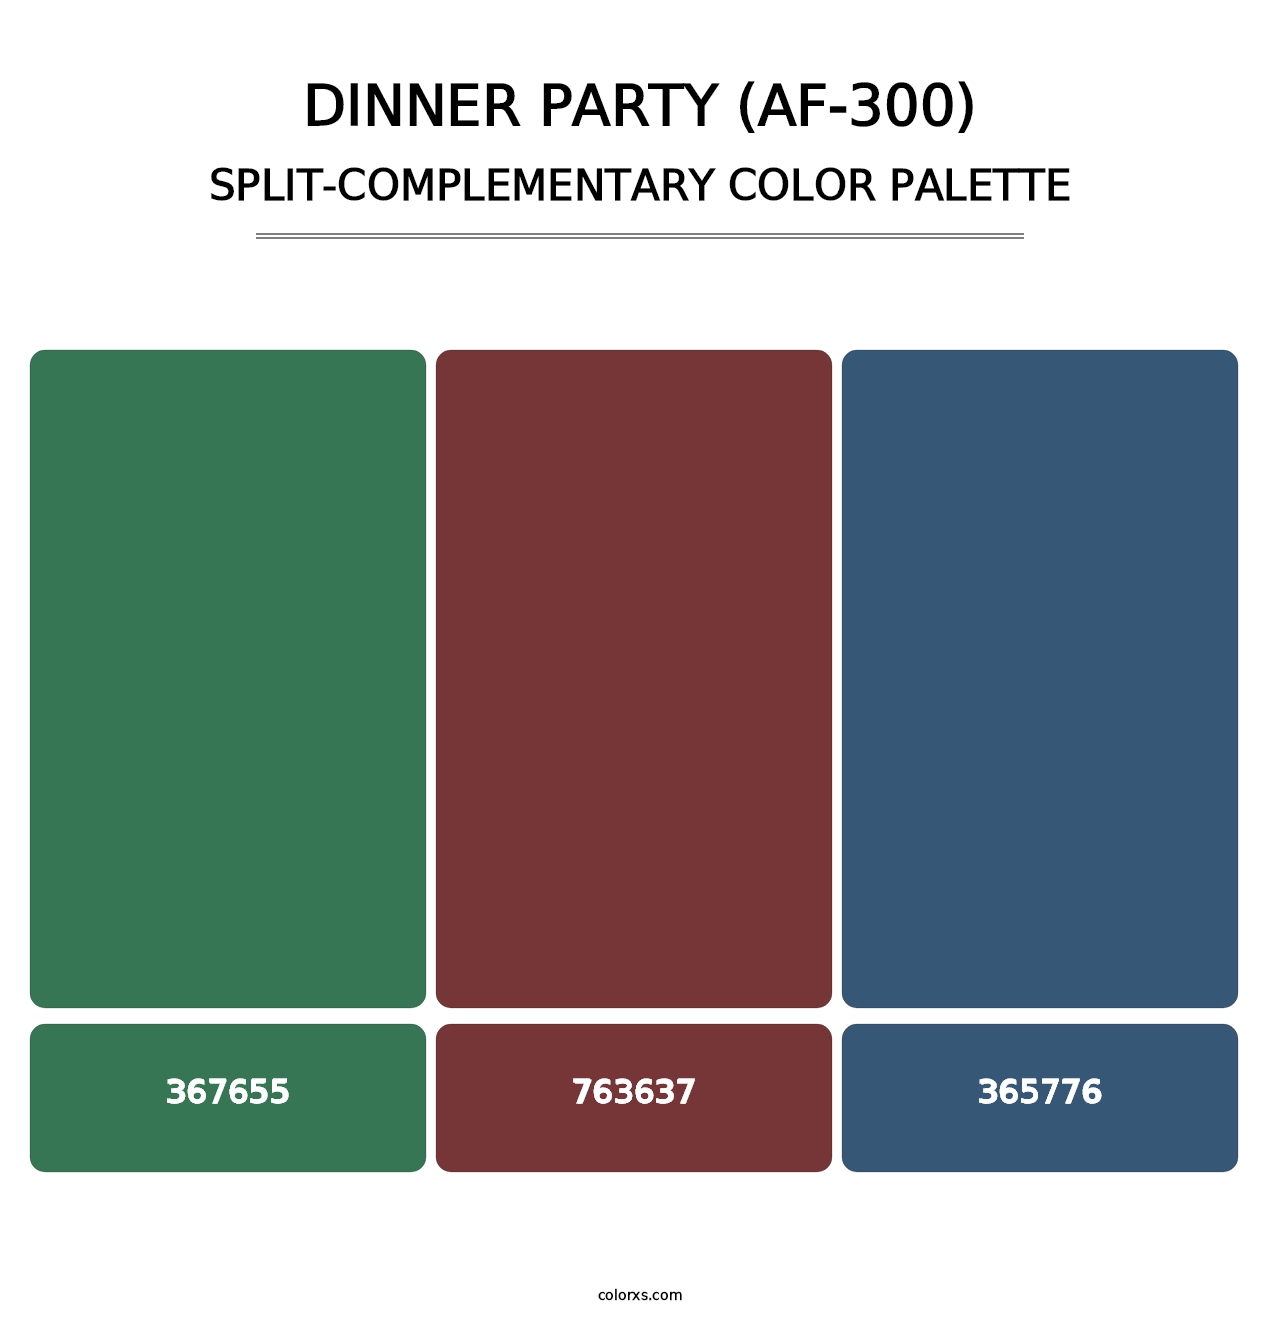 Dinner Party (AF-300) - Split-Complementary Color Palette